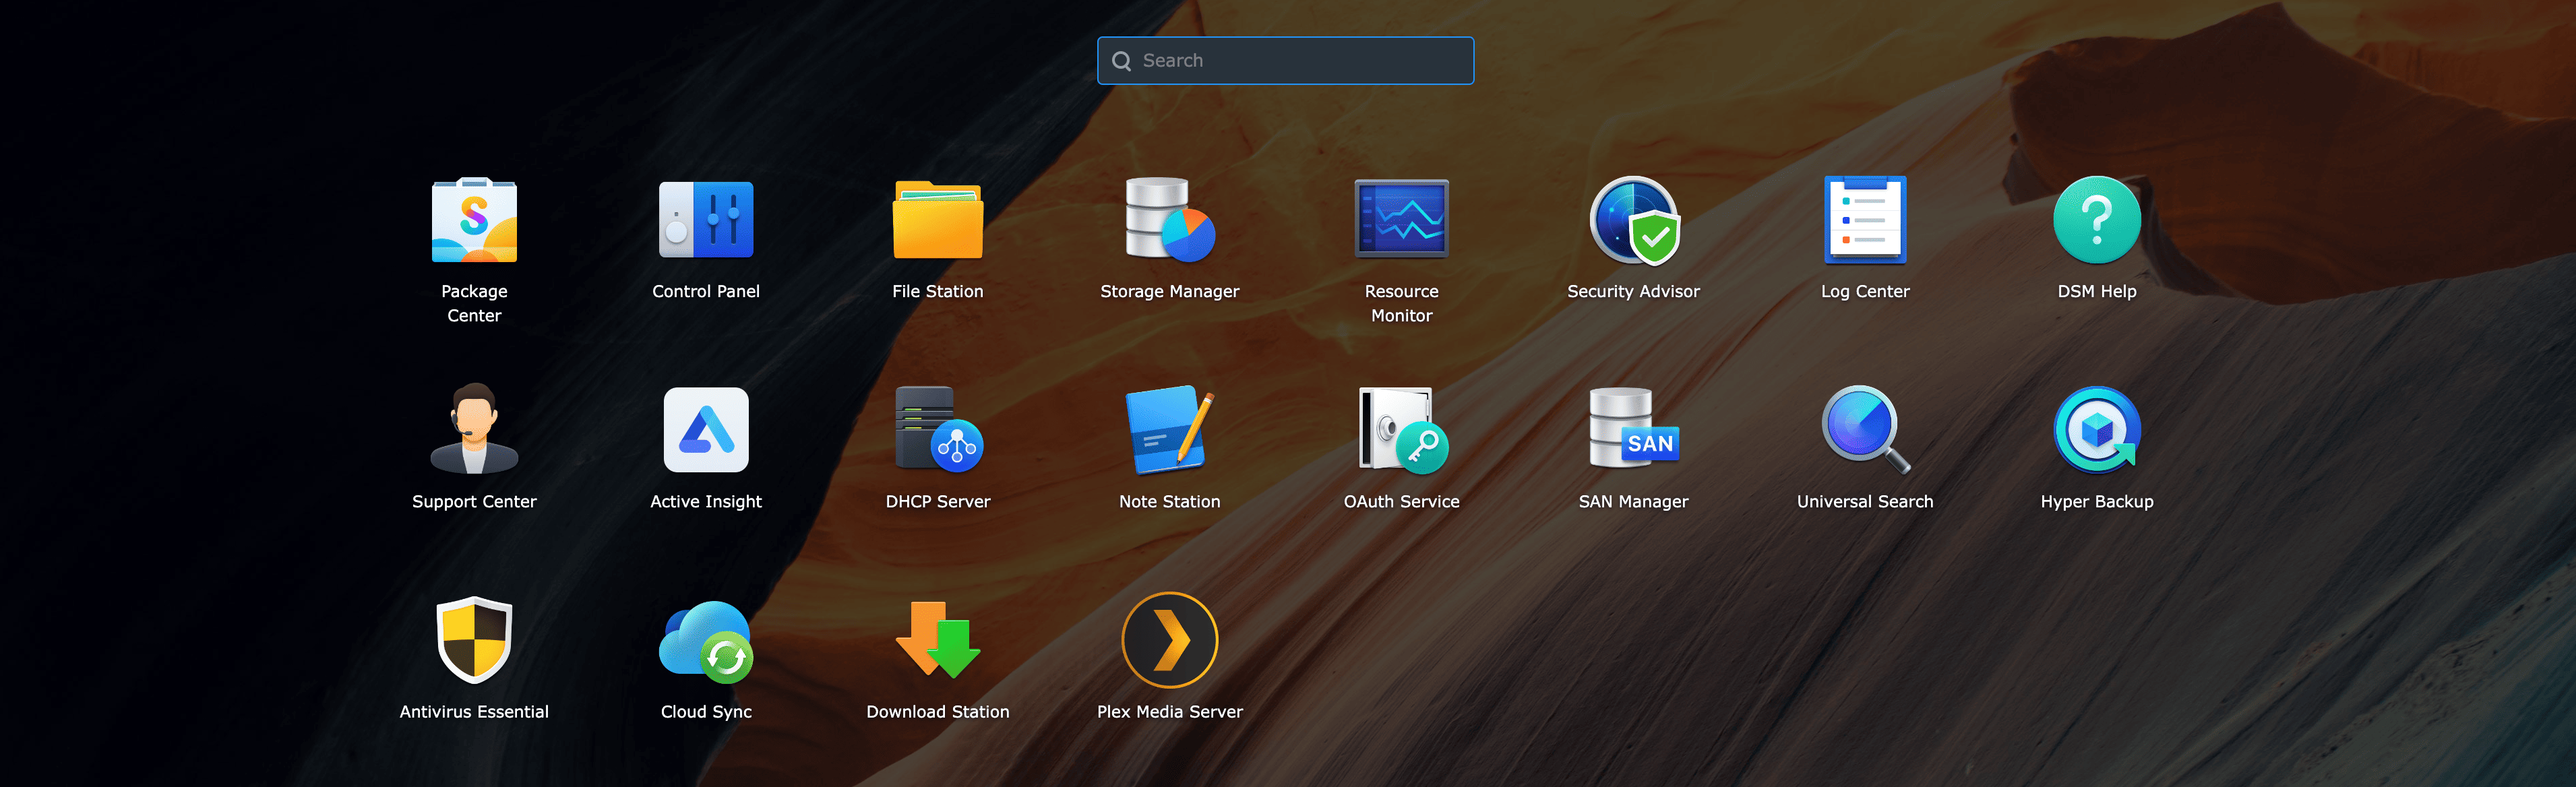 DSM Desktop and Apps